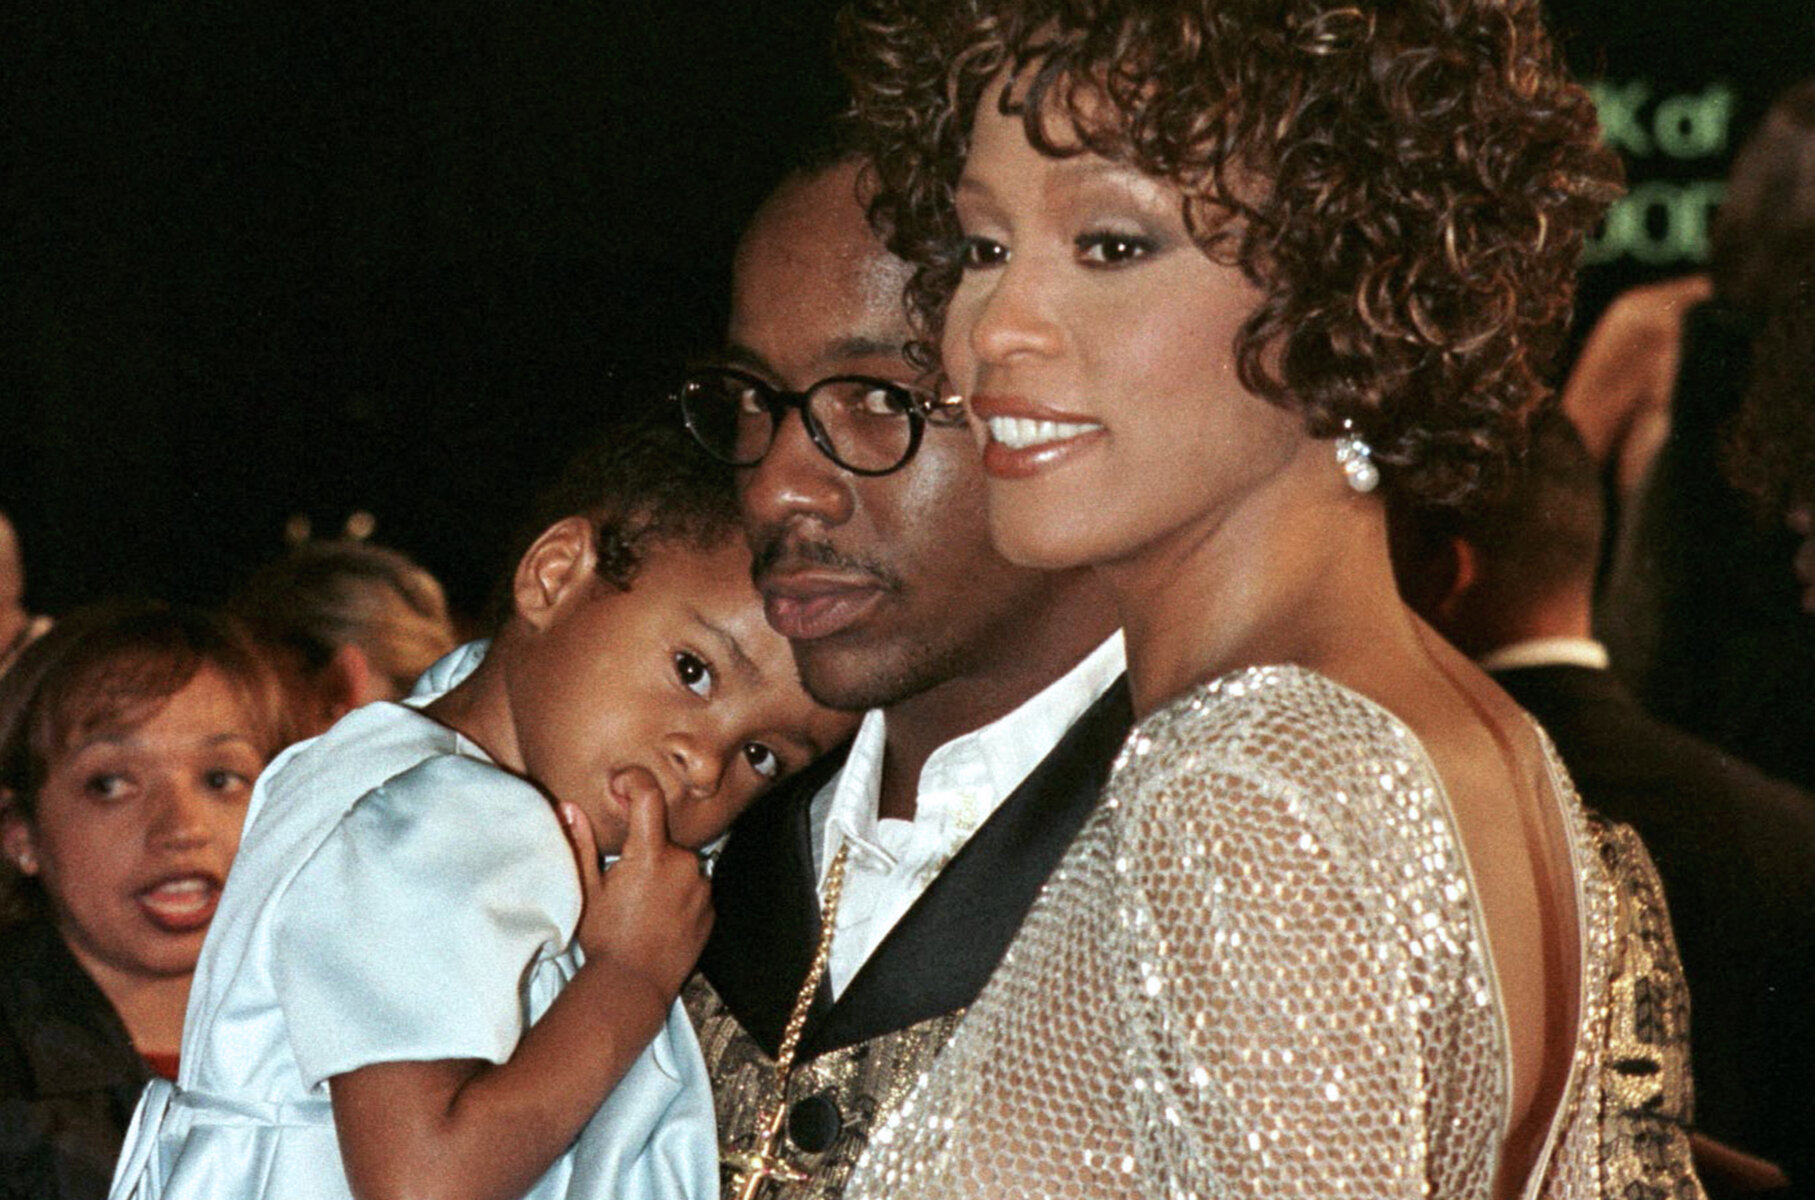 <p>В 1989 году Уитни создала благотворительный фонд The Whitney Houston Foundation For Children. Вместо подарков на свою свадьбу в 1992 году певица попросила гостей сделать пожертвования в ее фонд помощи детям.</p>

<p><em>На фото: с мужем Бобби Брауном и дочерью Кристиной</em></p>